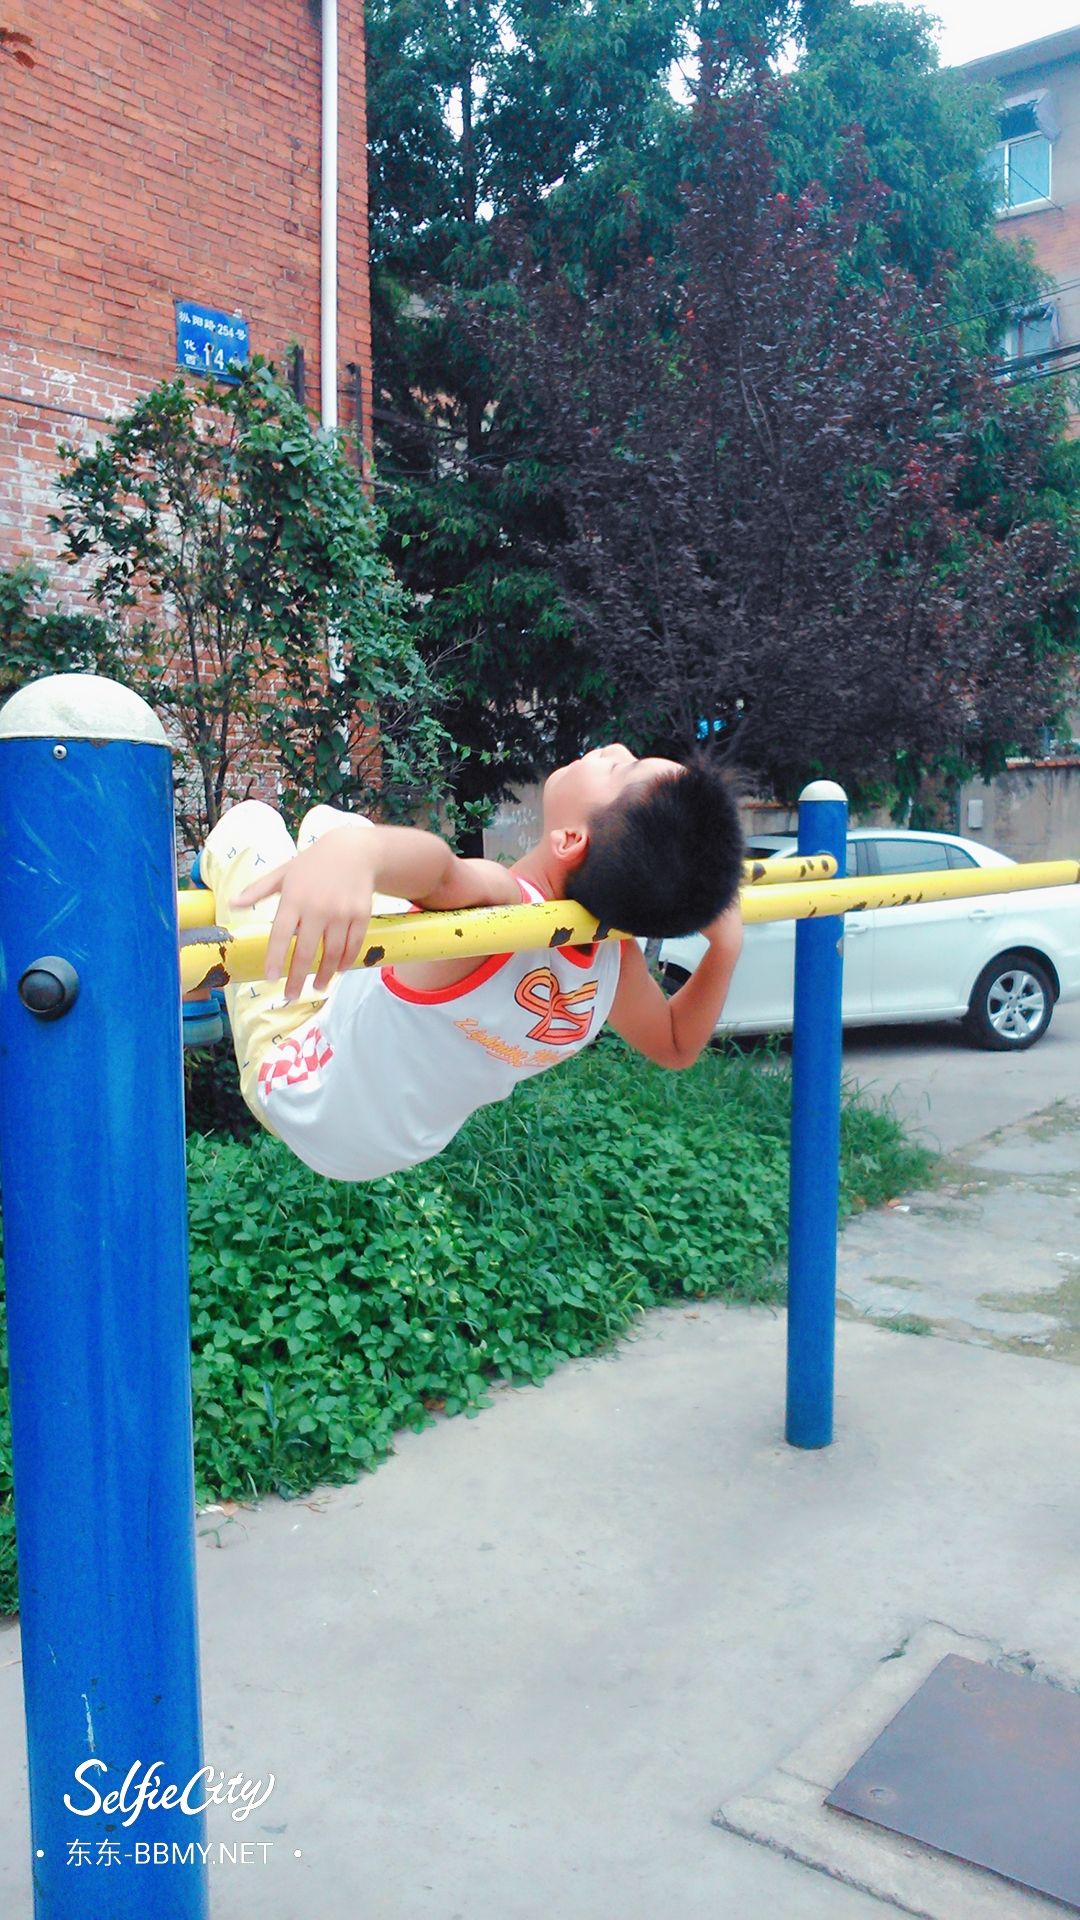 金东浩成长日记玩双杠锻炼身体照片SelfieCity_20210920132851_org.jpg